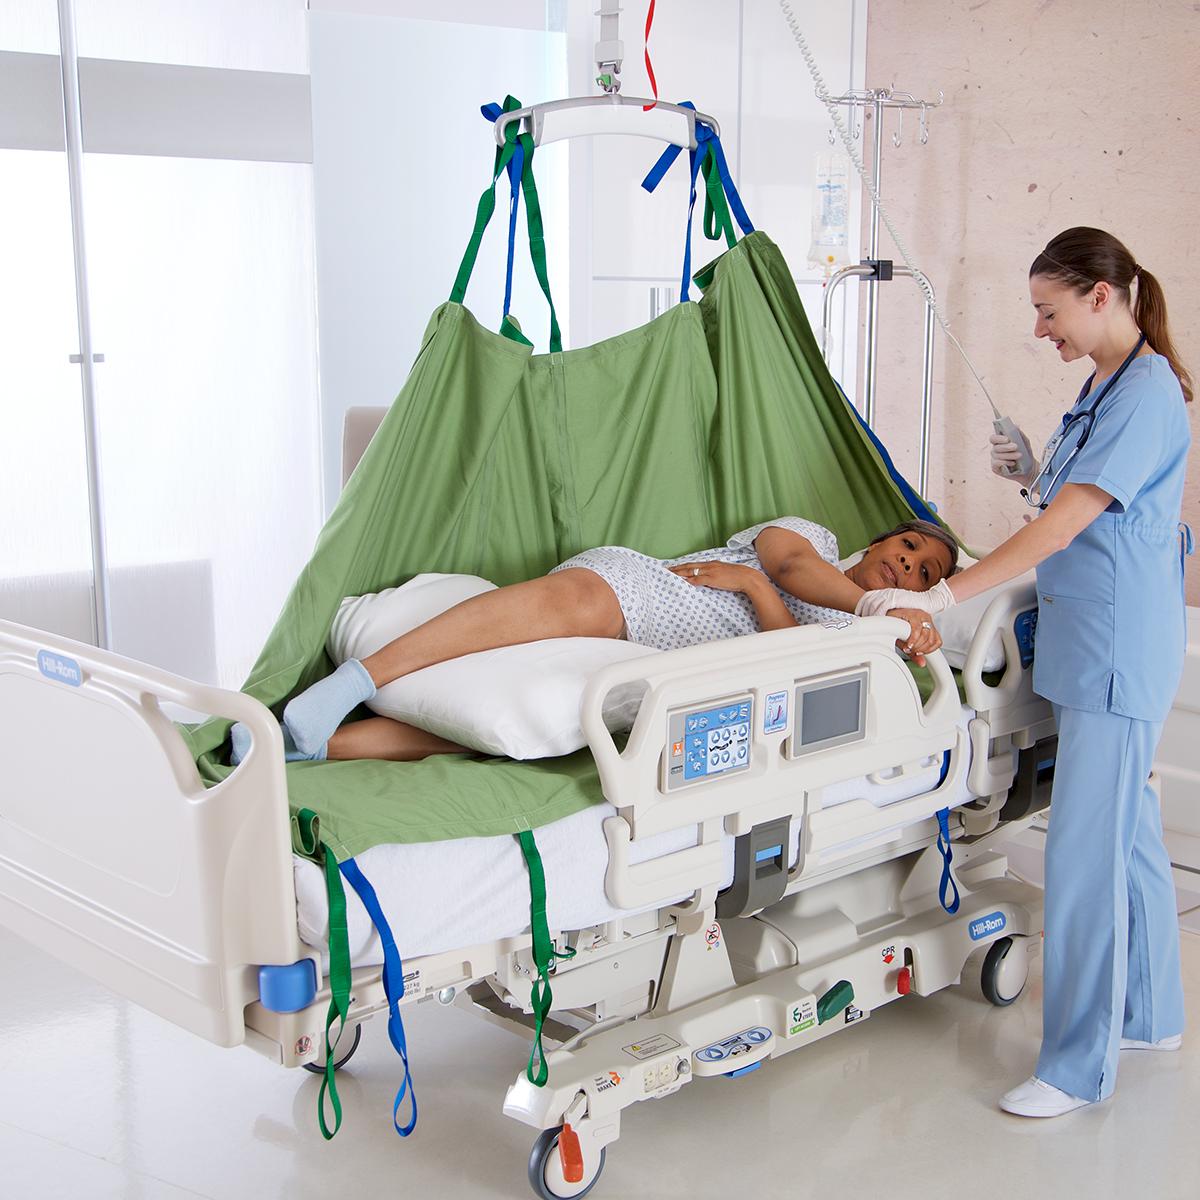 Klinikmitarbeiter, der einen Hillrom Deckenlifter und ein RepoSheet verwendet, um einen Patienten in einem Krankenhausbett neu zu positionieren